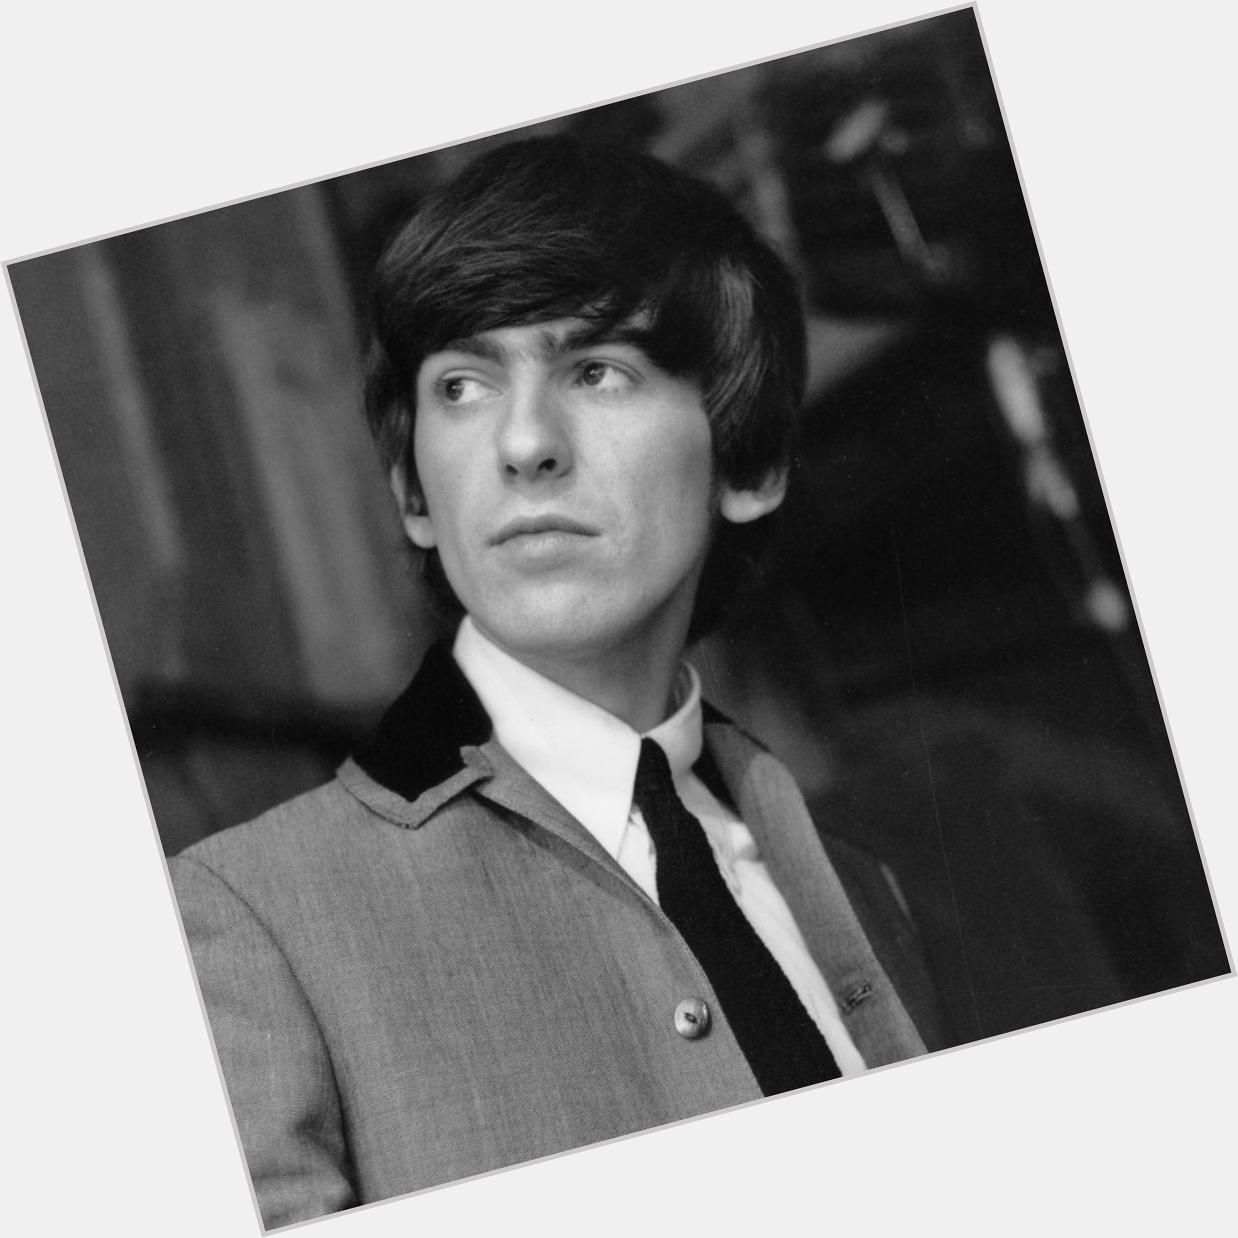 George Harrison. Born Feb 25th 1943.

Happy birthday George. 